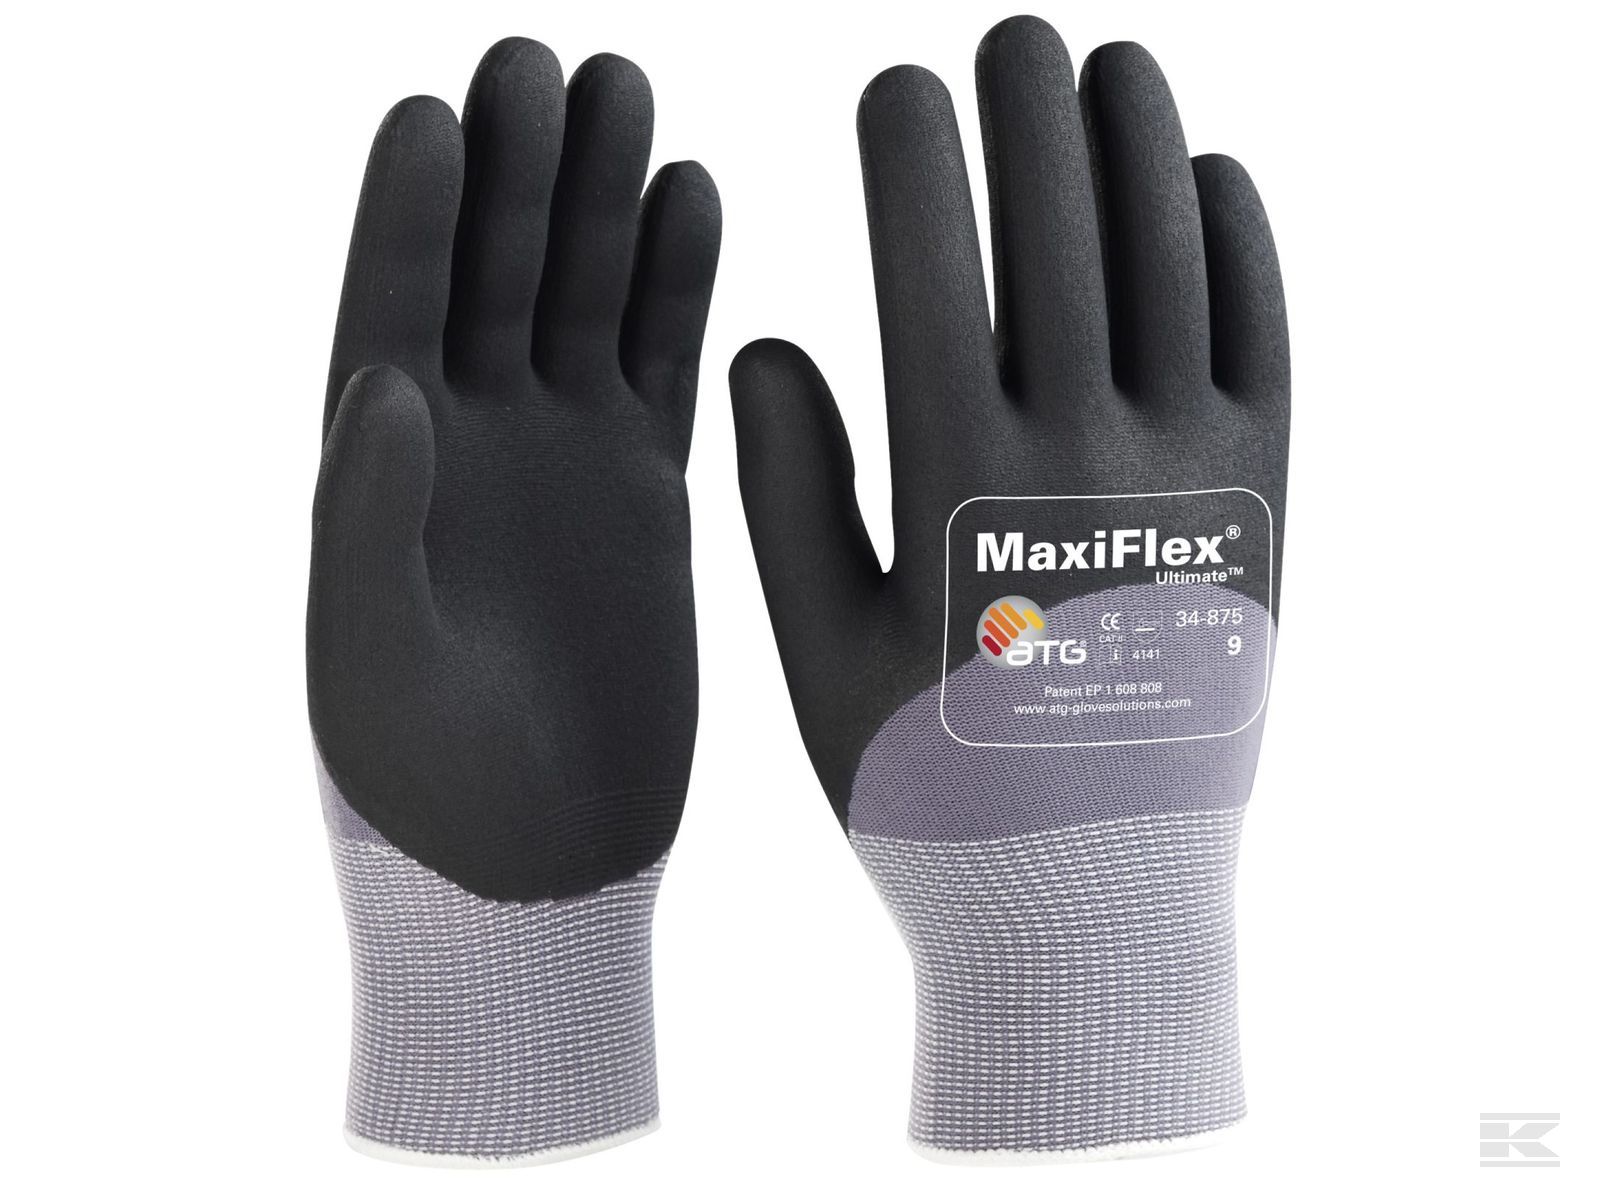 Sikkerheds udstyr & Beklædning / Tøj til Skov & Have » Handsker Montage Handsker » Montagehandske MaxiFlex ultimate